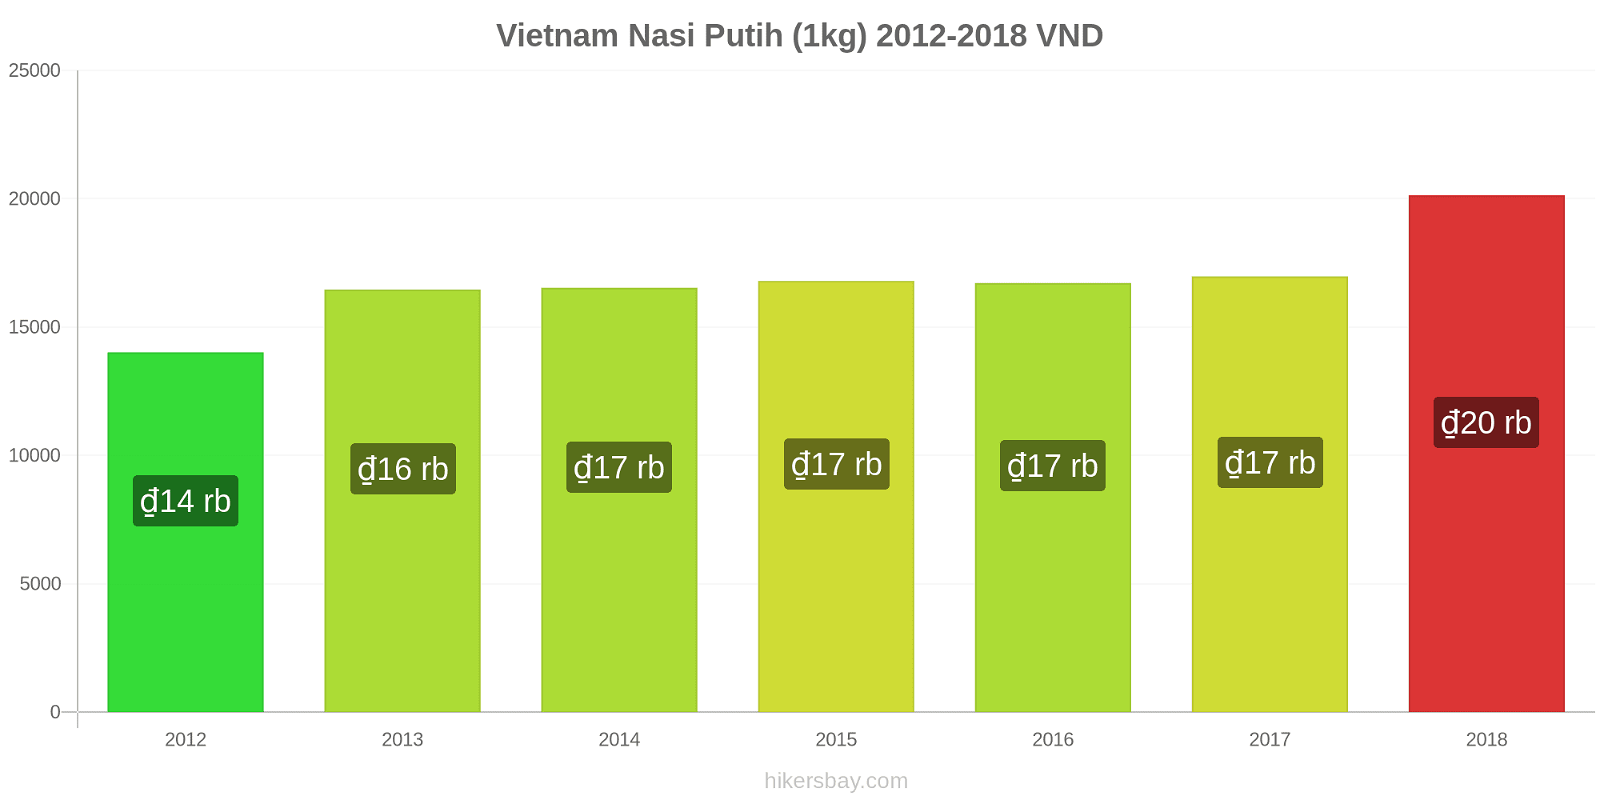 Vietnam perubahan harga Satu kilogram beras putih hikersbay.com